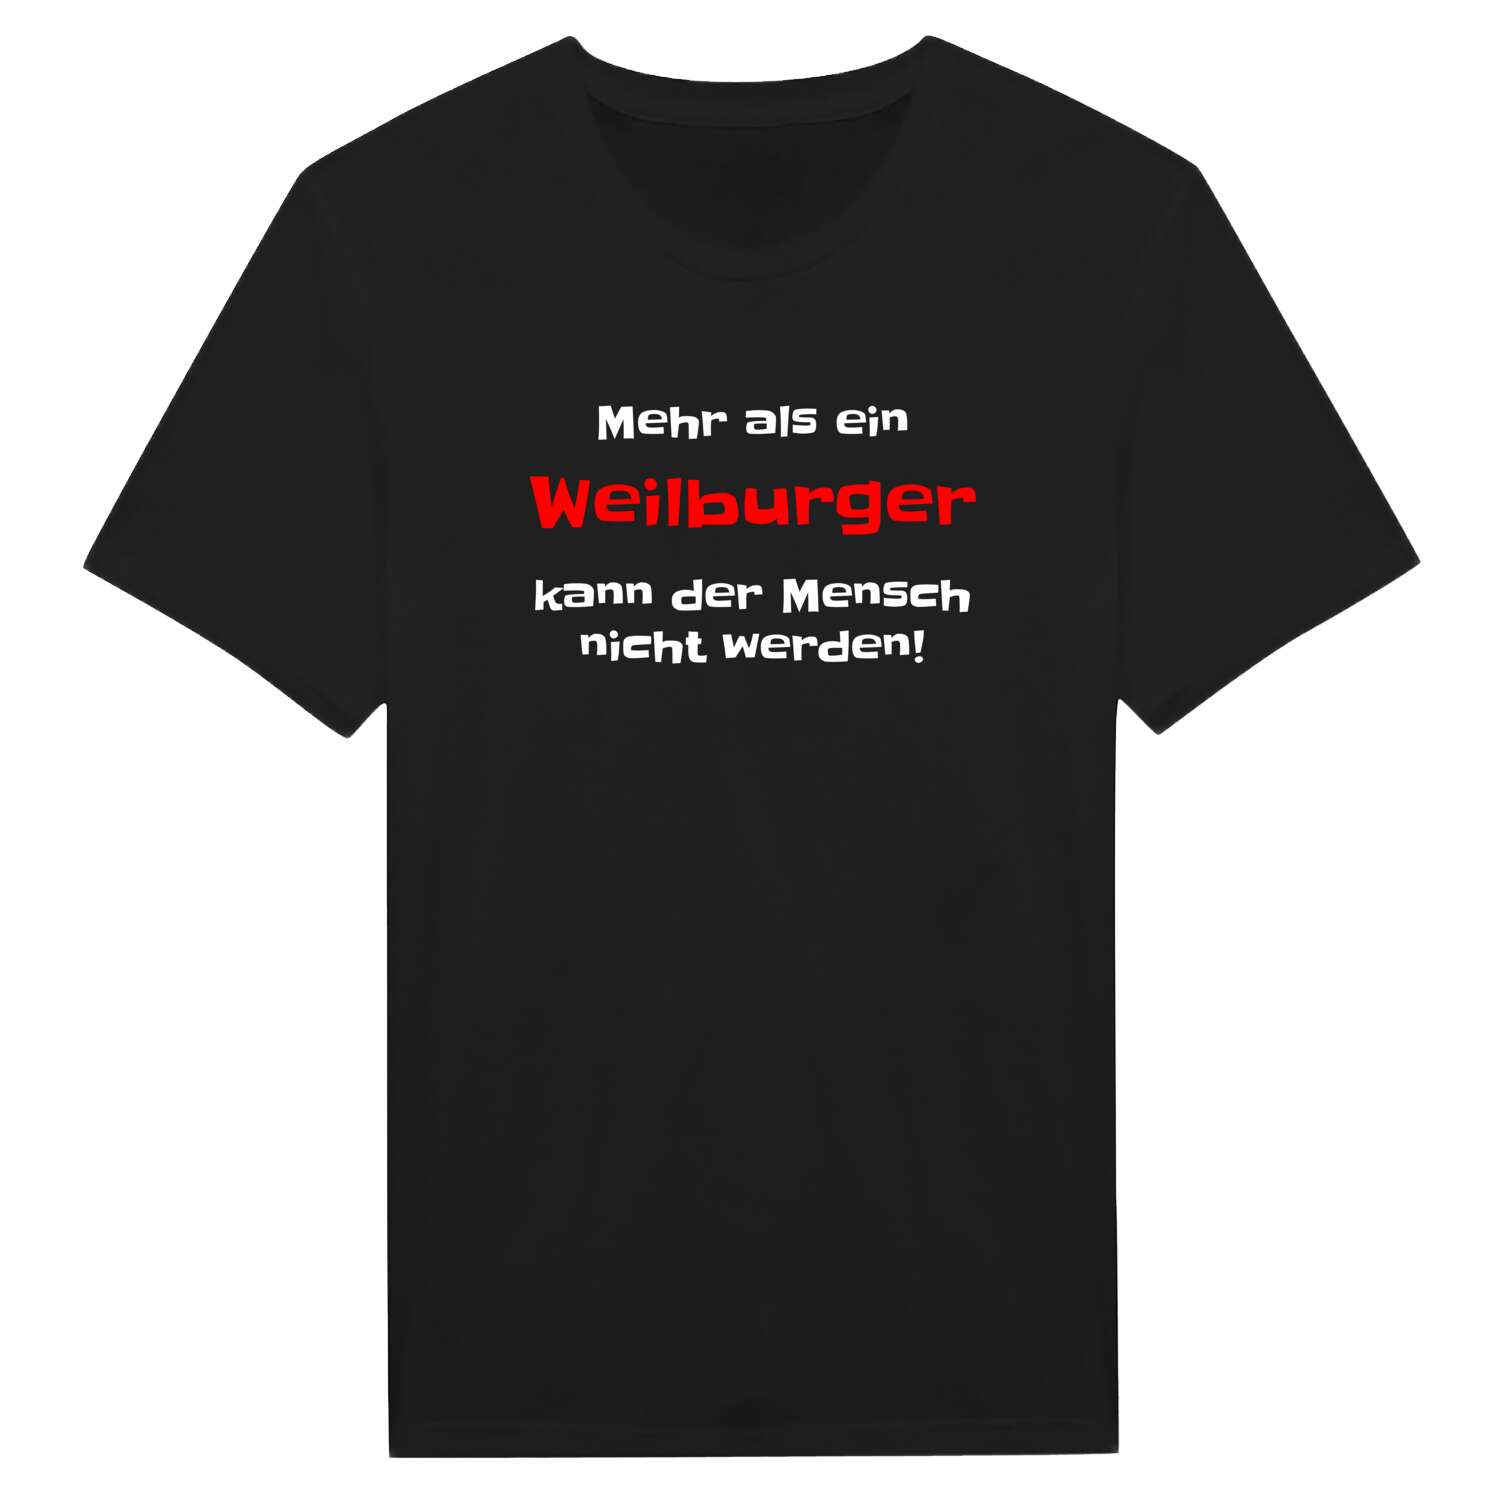 Weilburg T-Shirt »Mehr als ein«